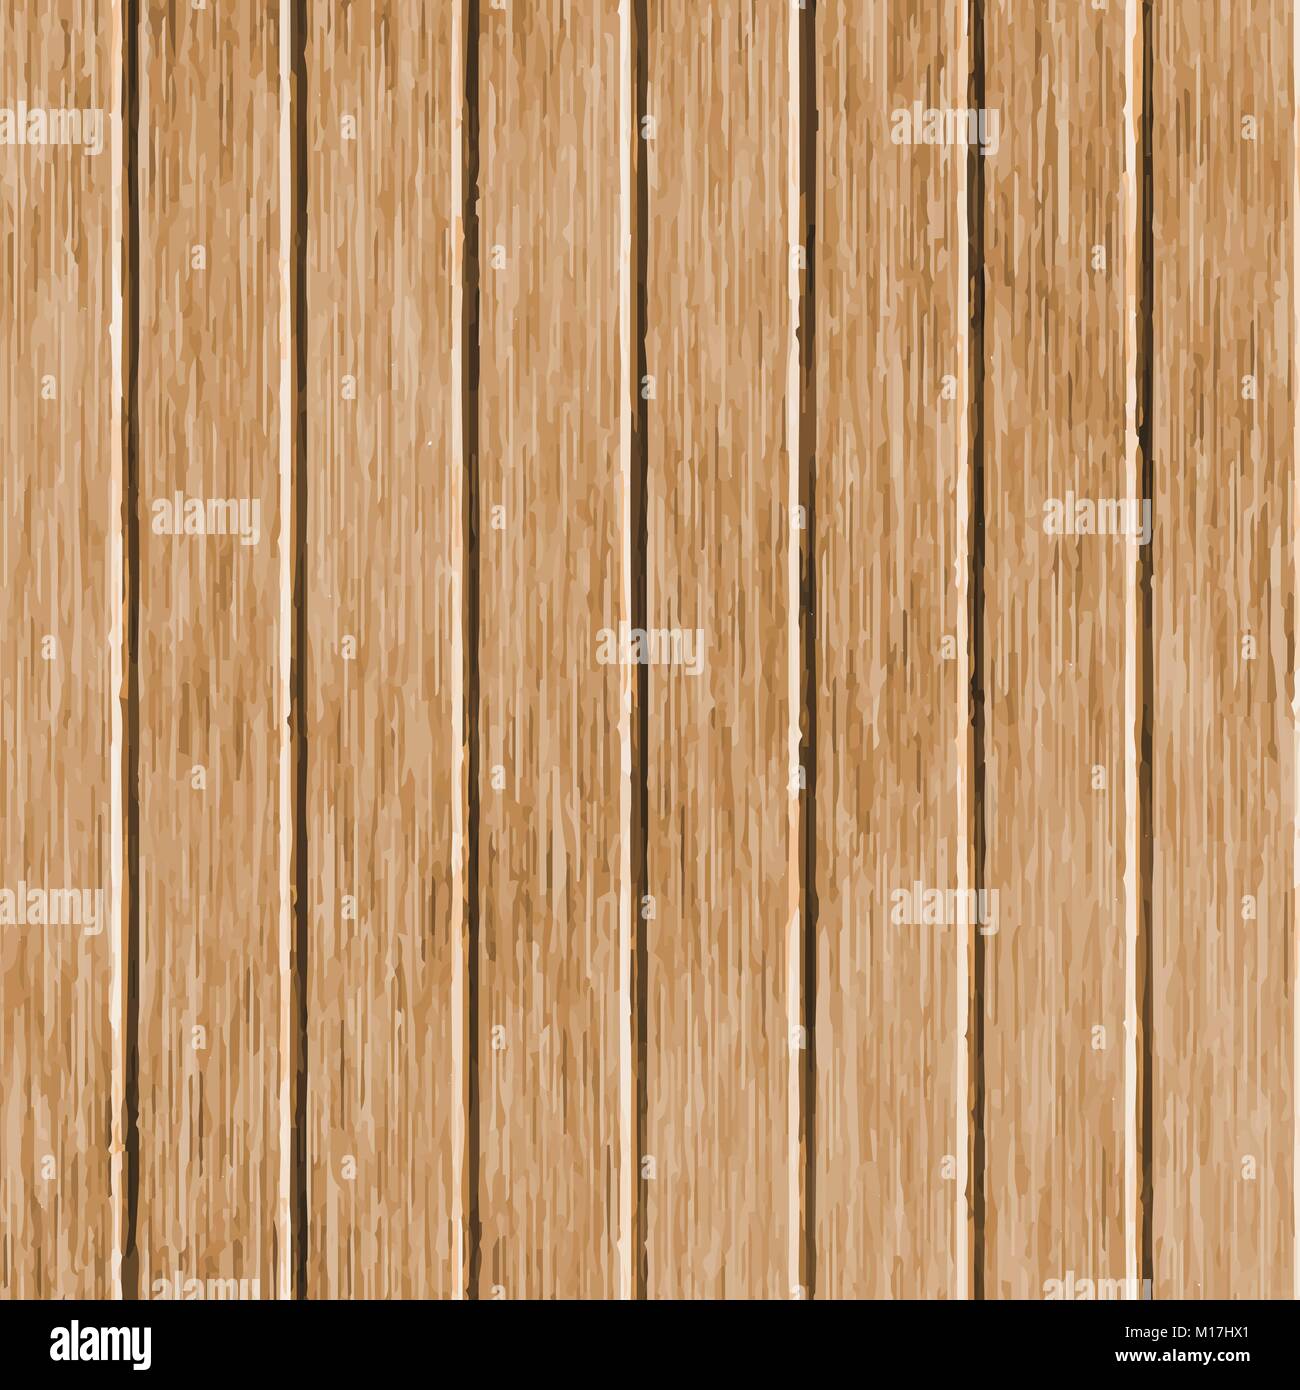 Walnuss Holz Textur. Board Holz- Oberfläche. Abstract grunge Holz- Muster. Vector Illustration Hintergrund Stock Vektor